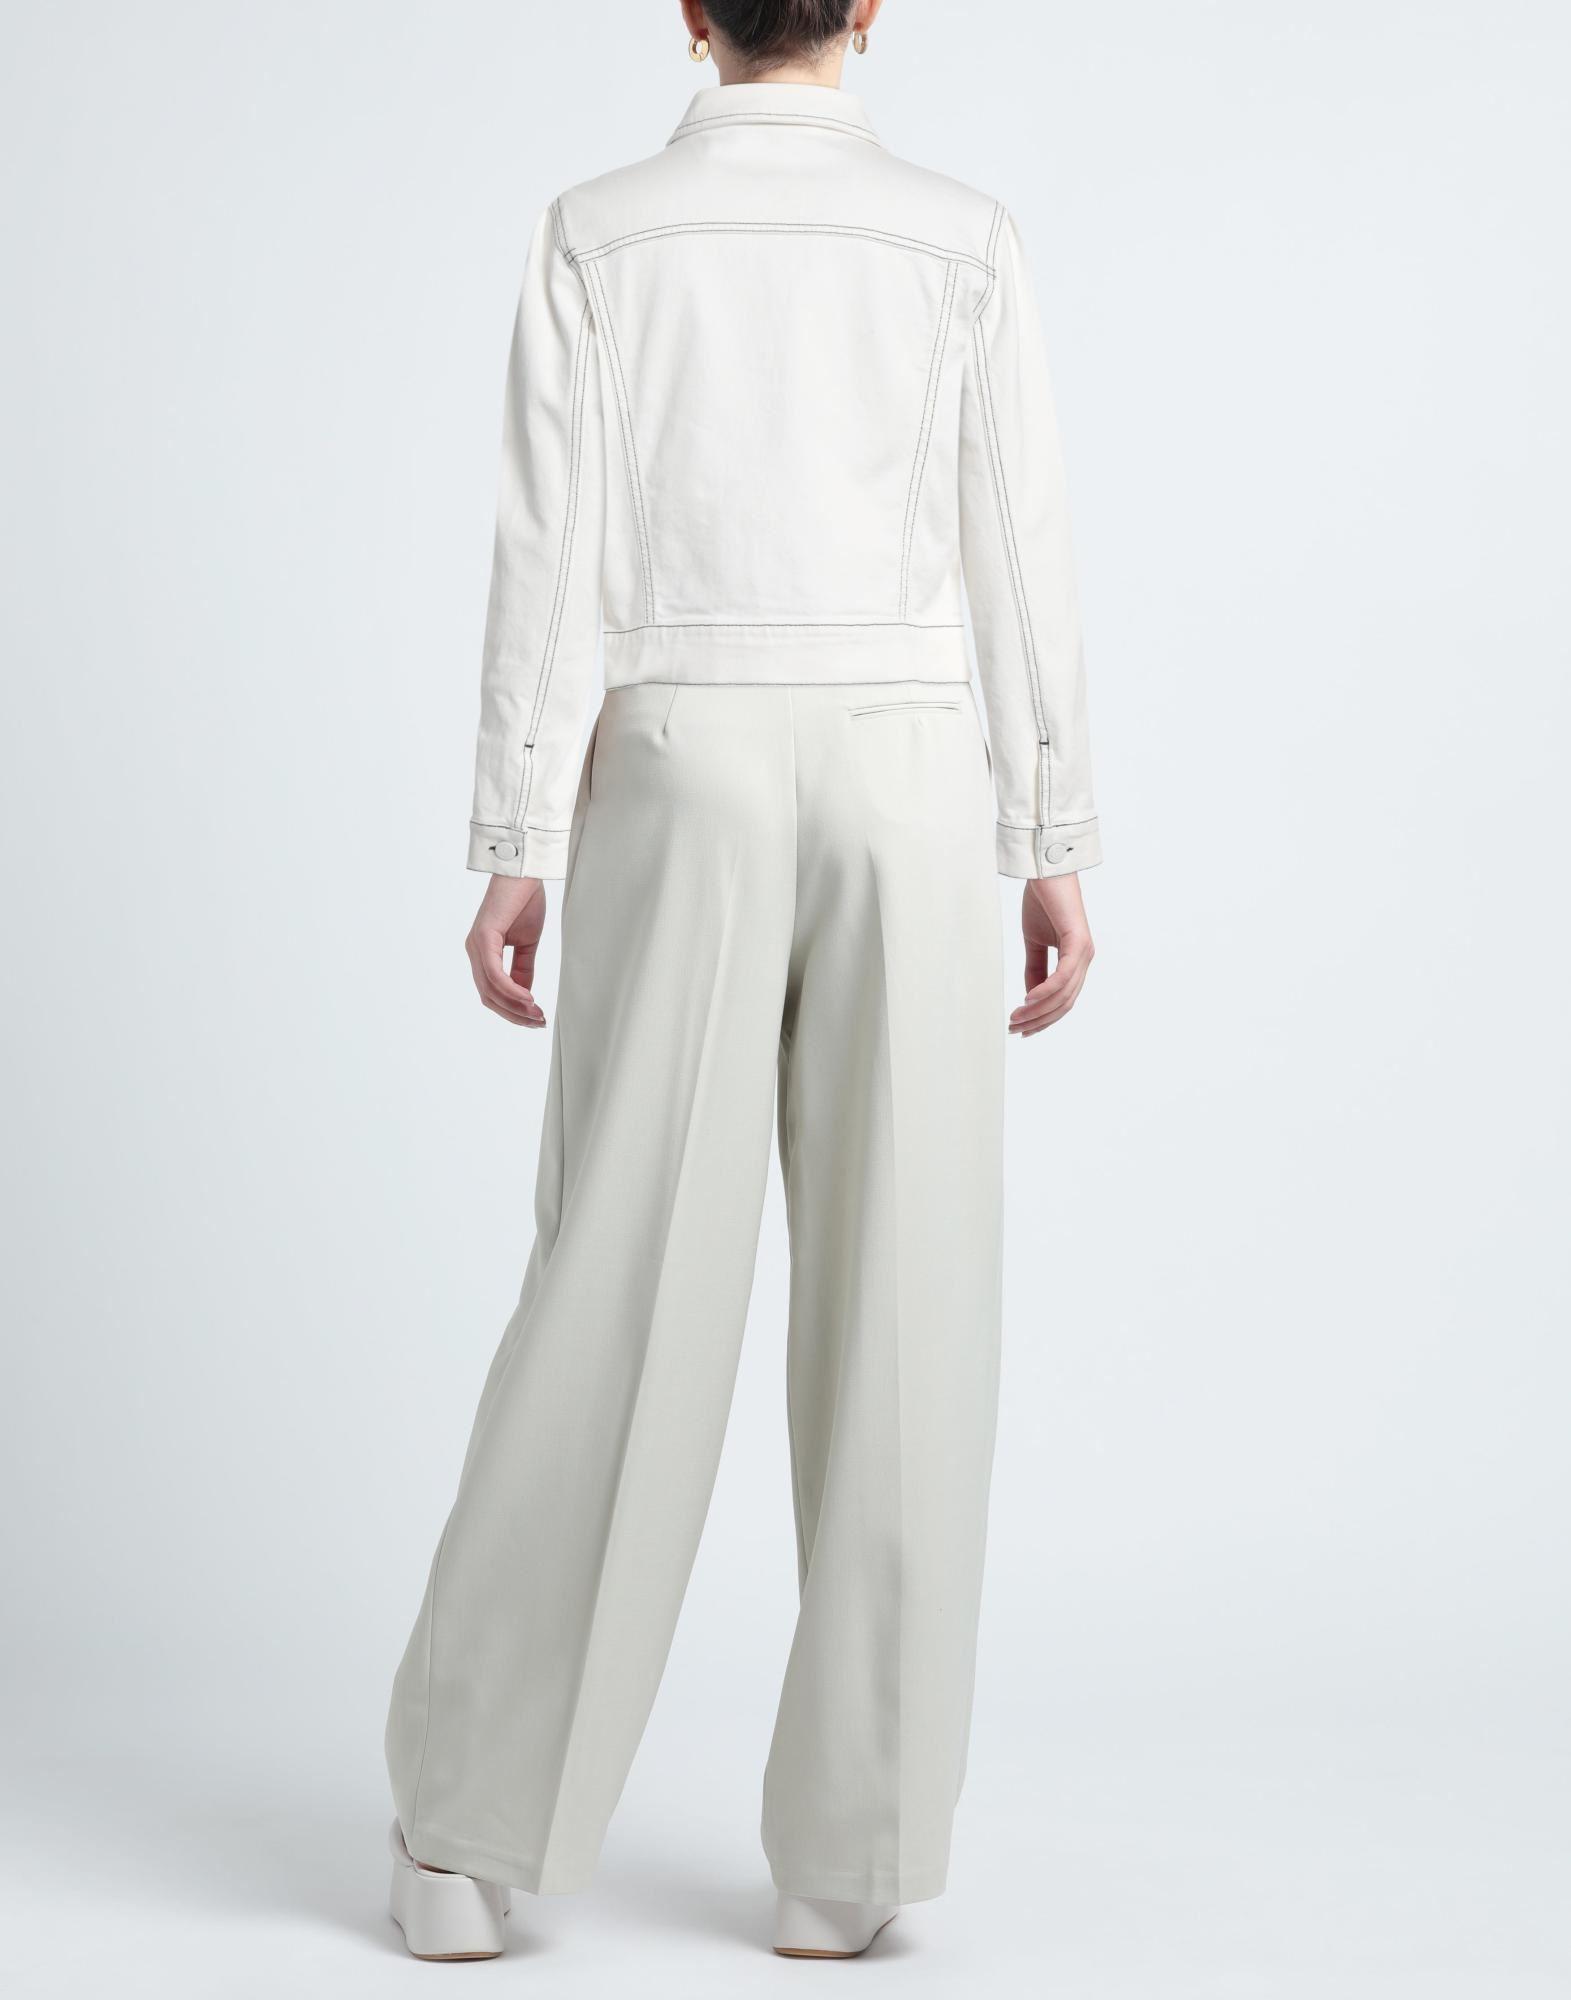 Kocca Denim Outerwear in White | Lyst